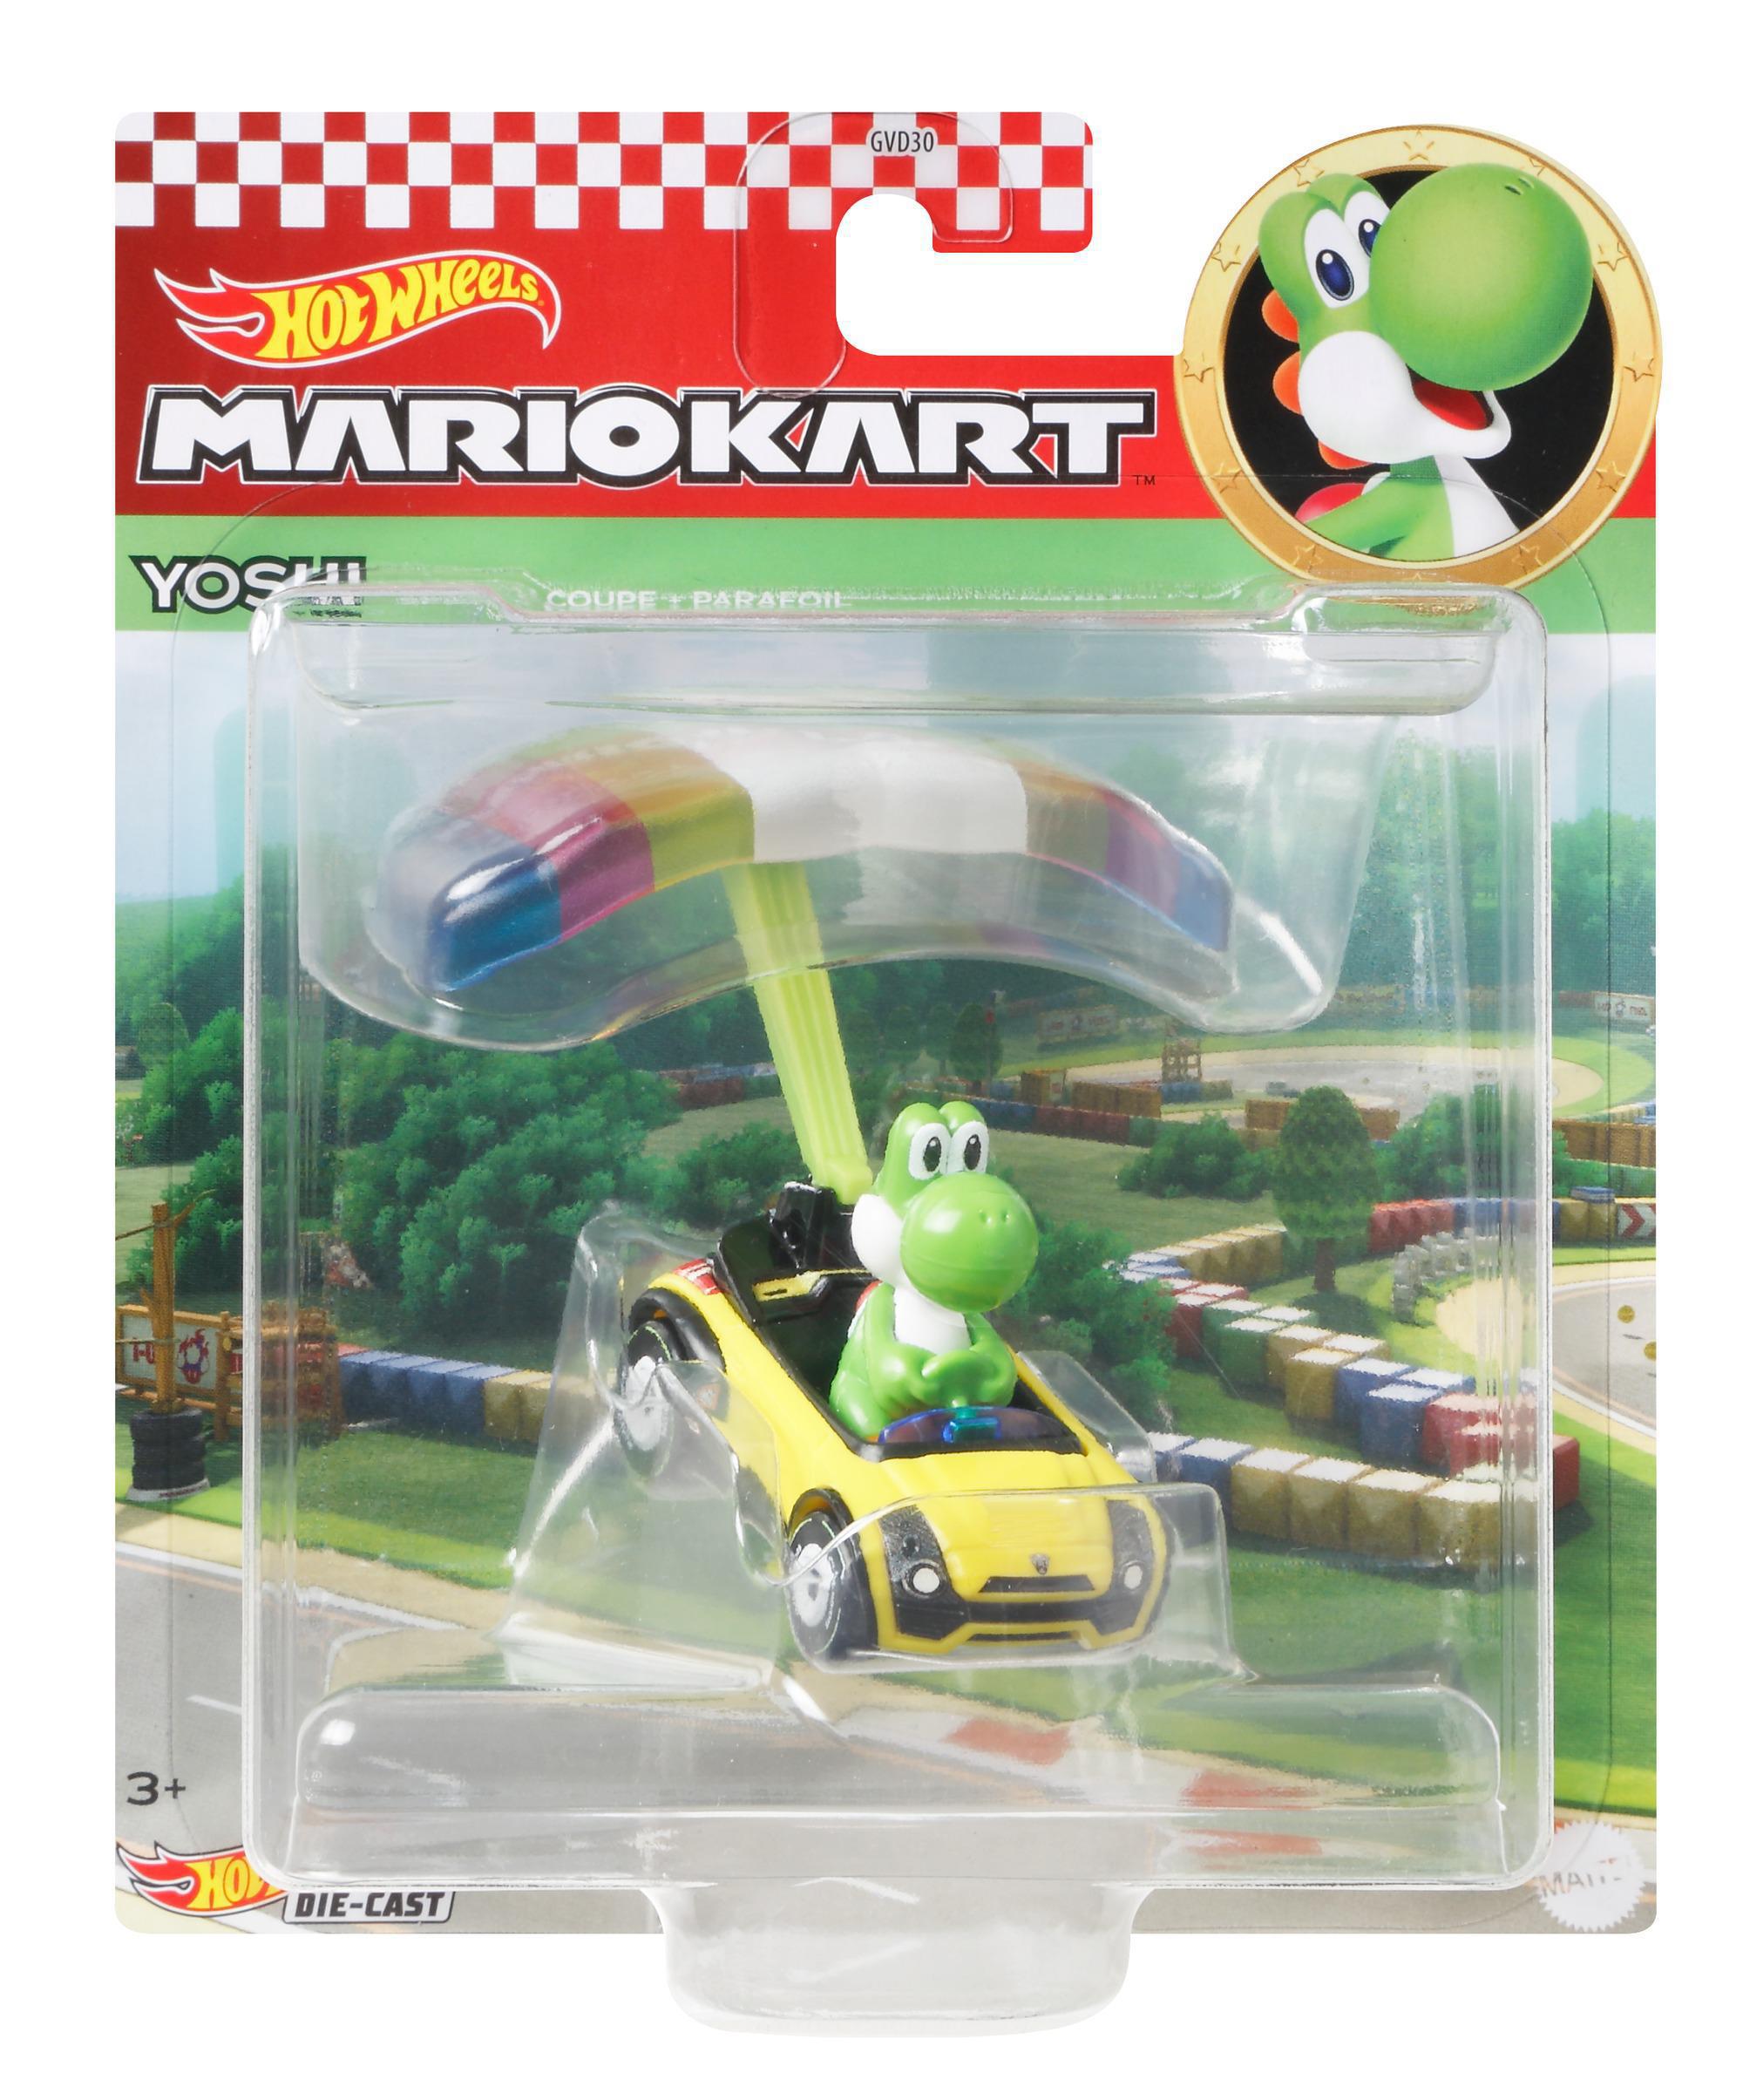 Kart HOT Kinder nicht Spielzeugauto Charakter Fahrzeug Jahren möglich Farbauswahl mit 3 WHEELS Glider, Mario Geschenk Die-Cast für ab